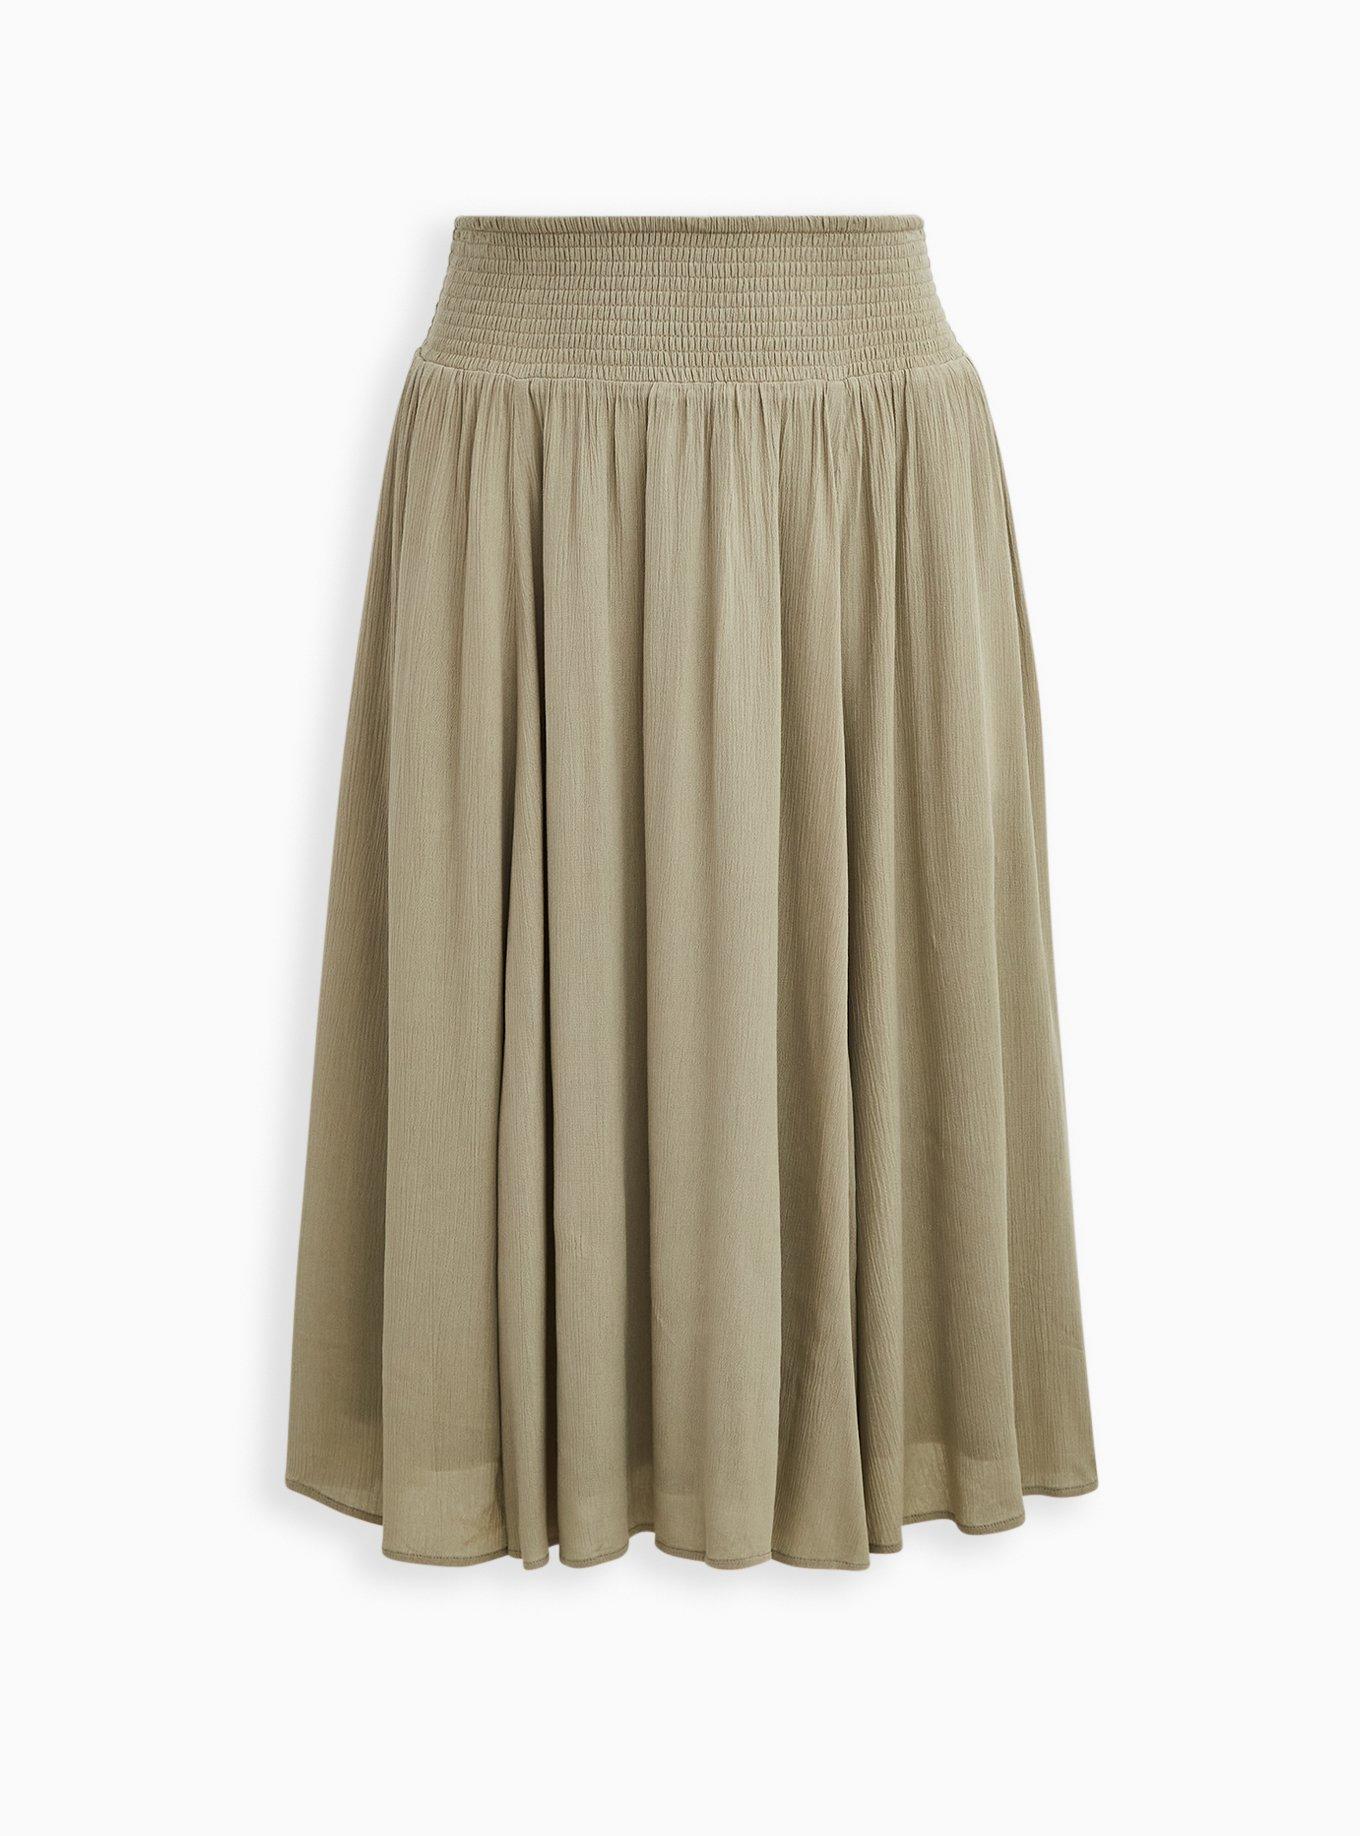 Plus Size - Green Gauze Smocked Waist Tea Length Skirt - Torrid